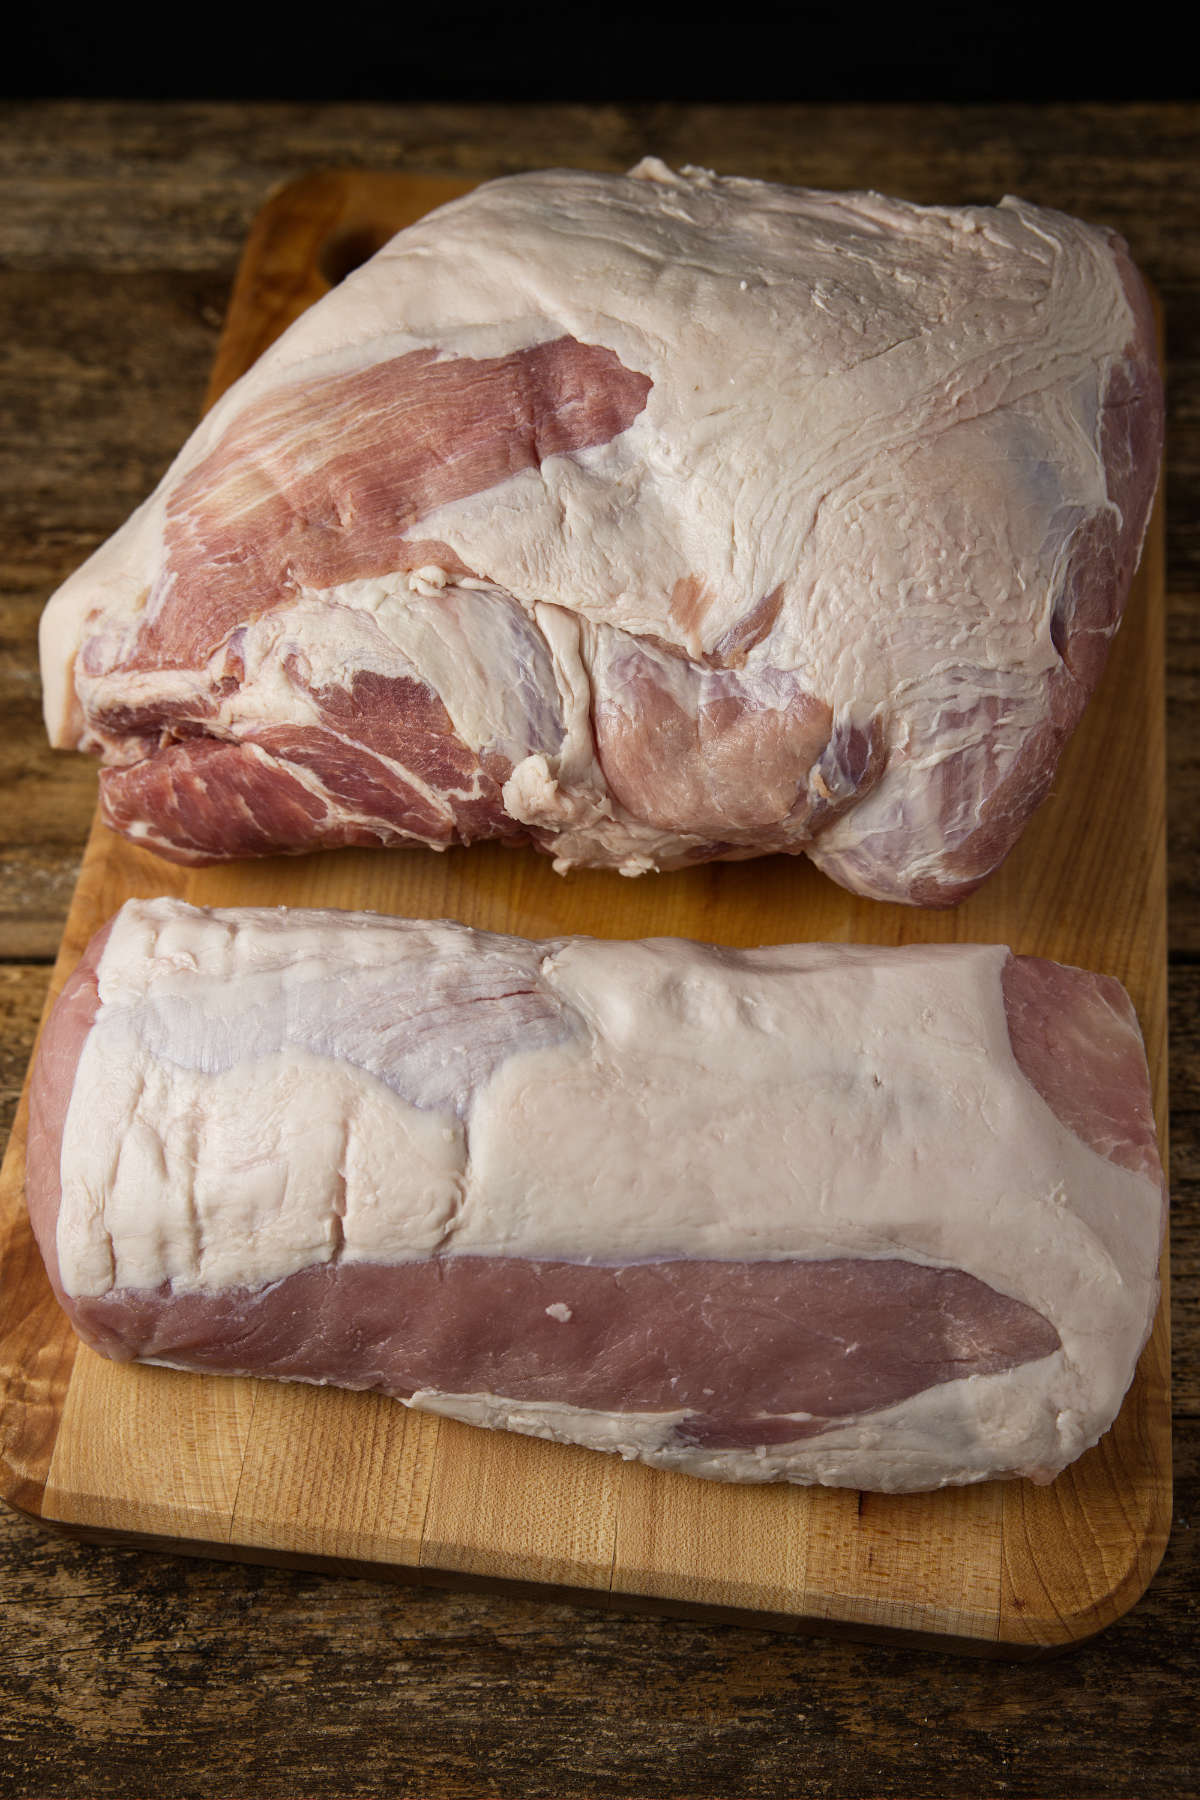 Pork shoulder vs pork loin side-by-side laying on a butcher block.